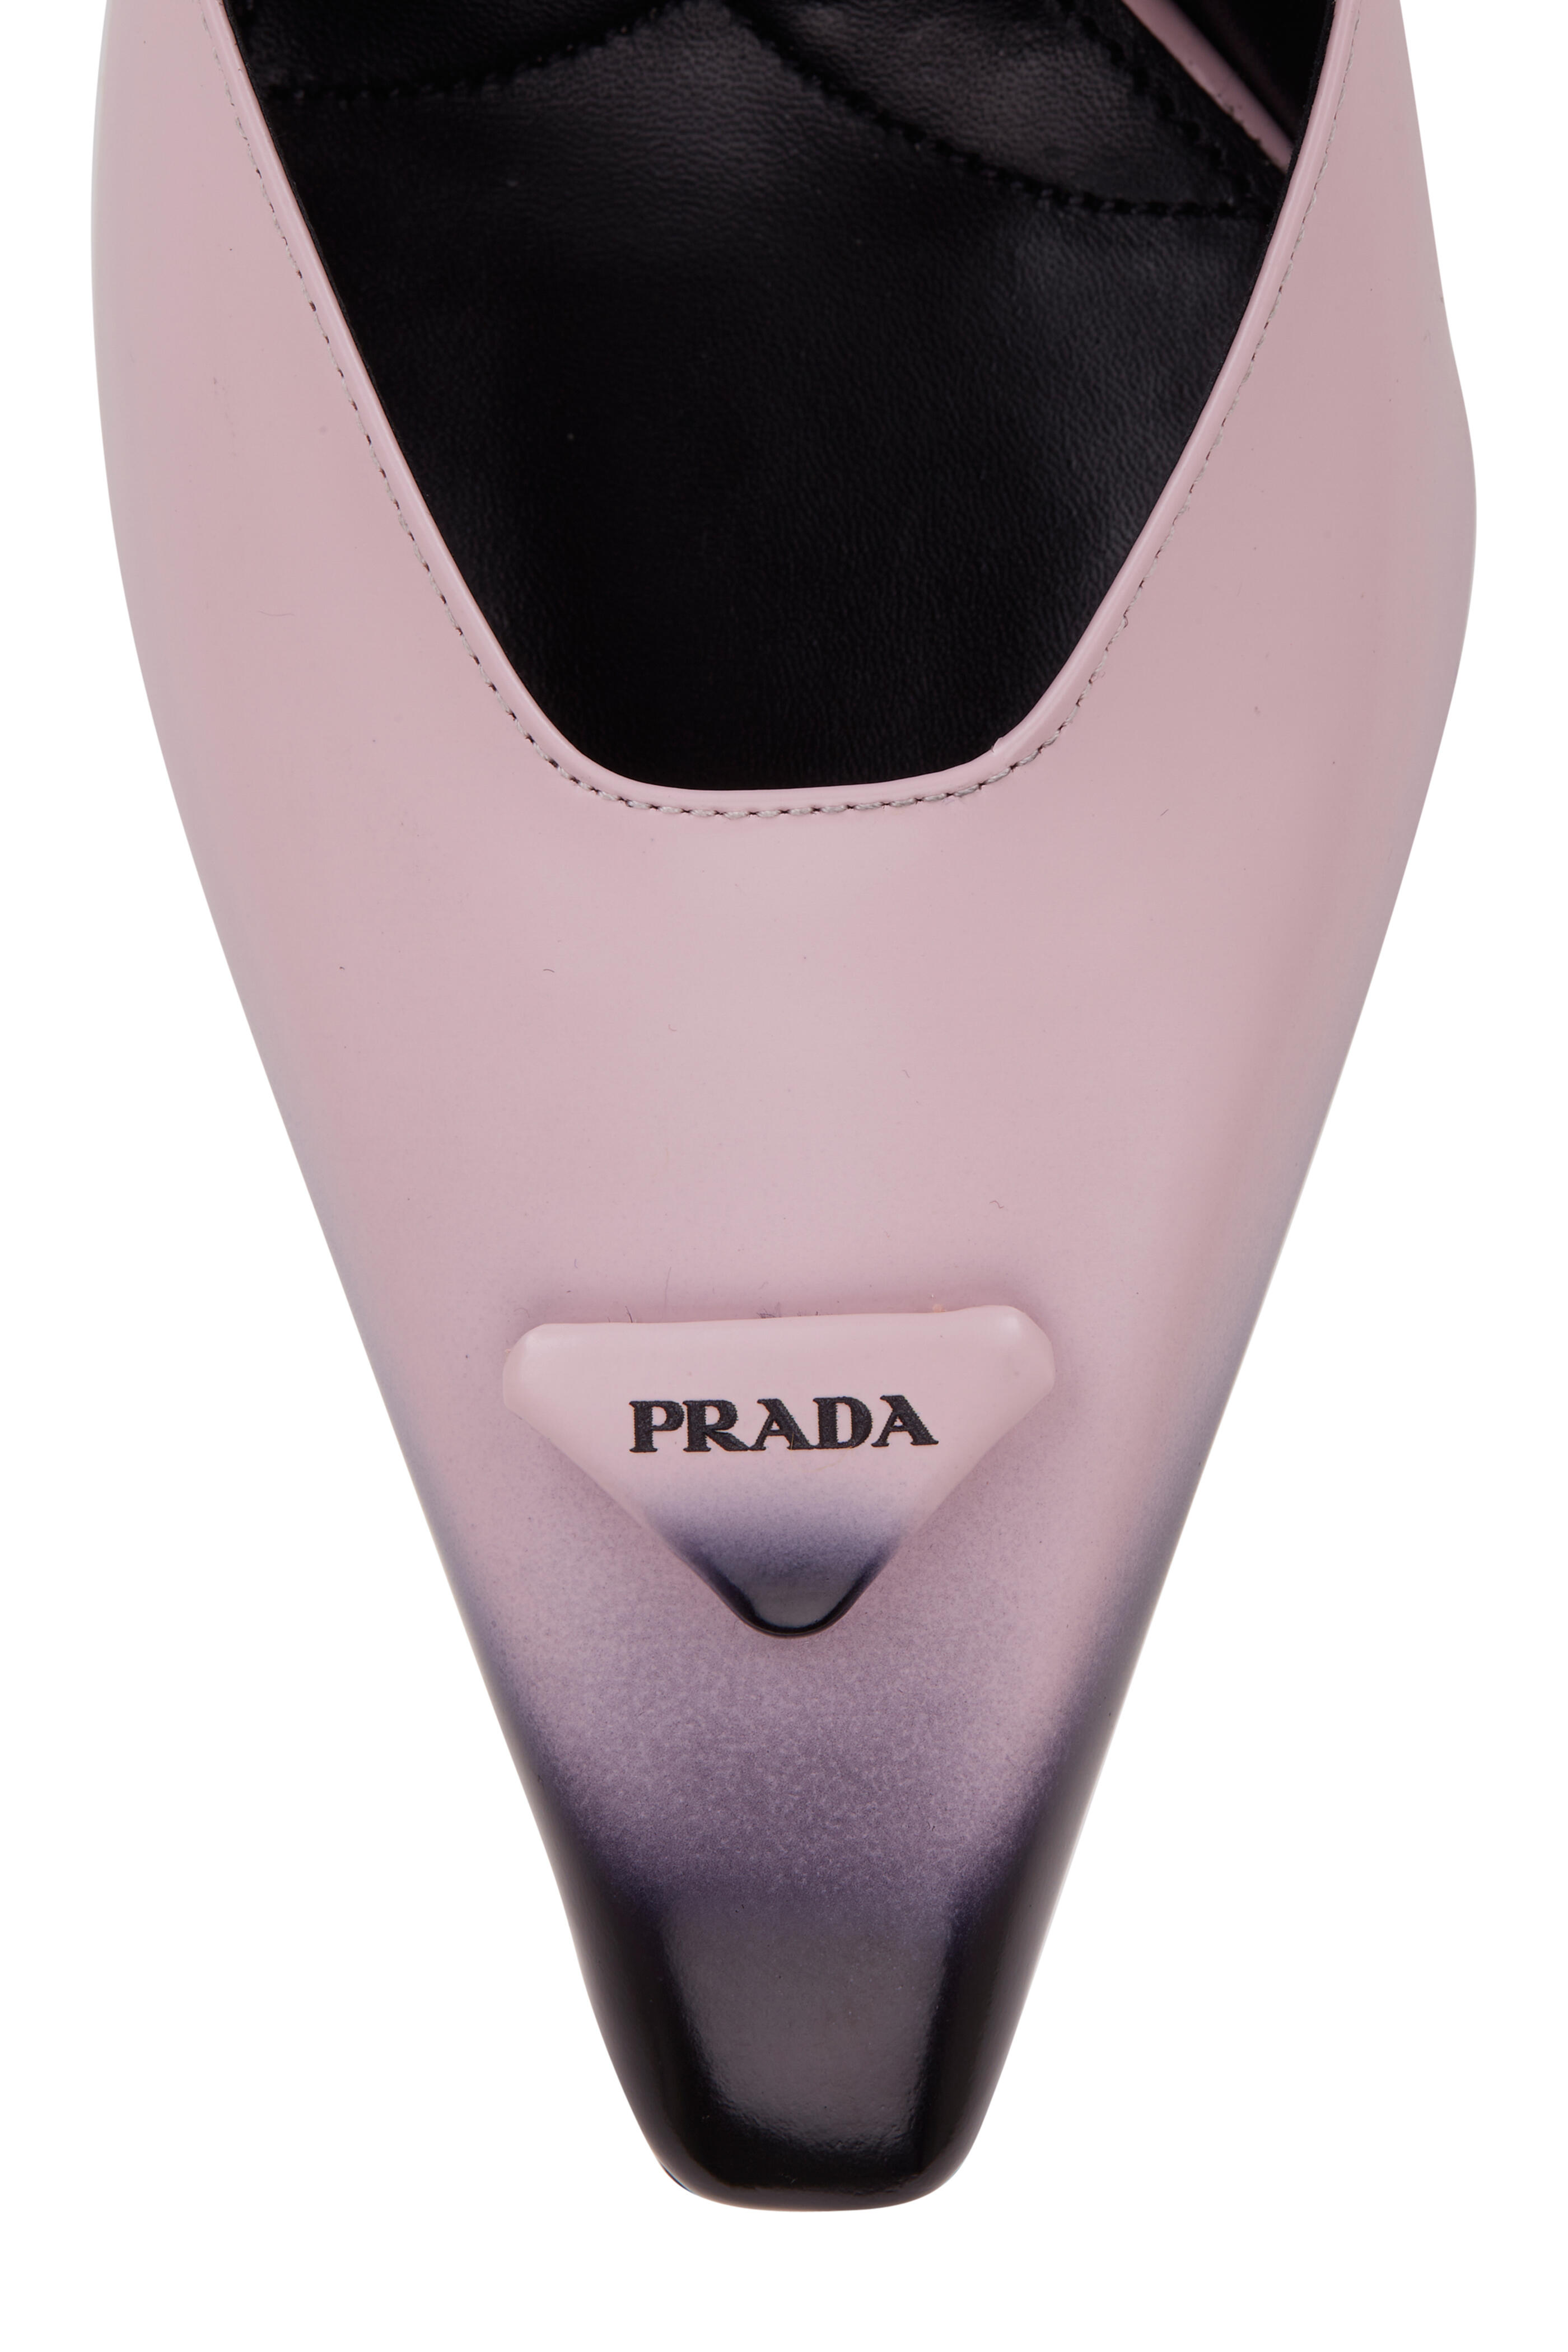 Prada - Alabaster Degrade Leather Pump, 95mm | Mitchell Stores